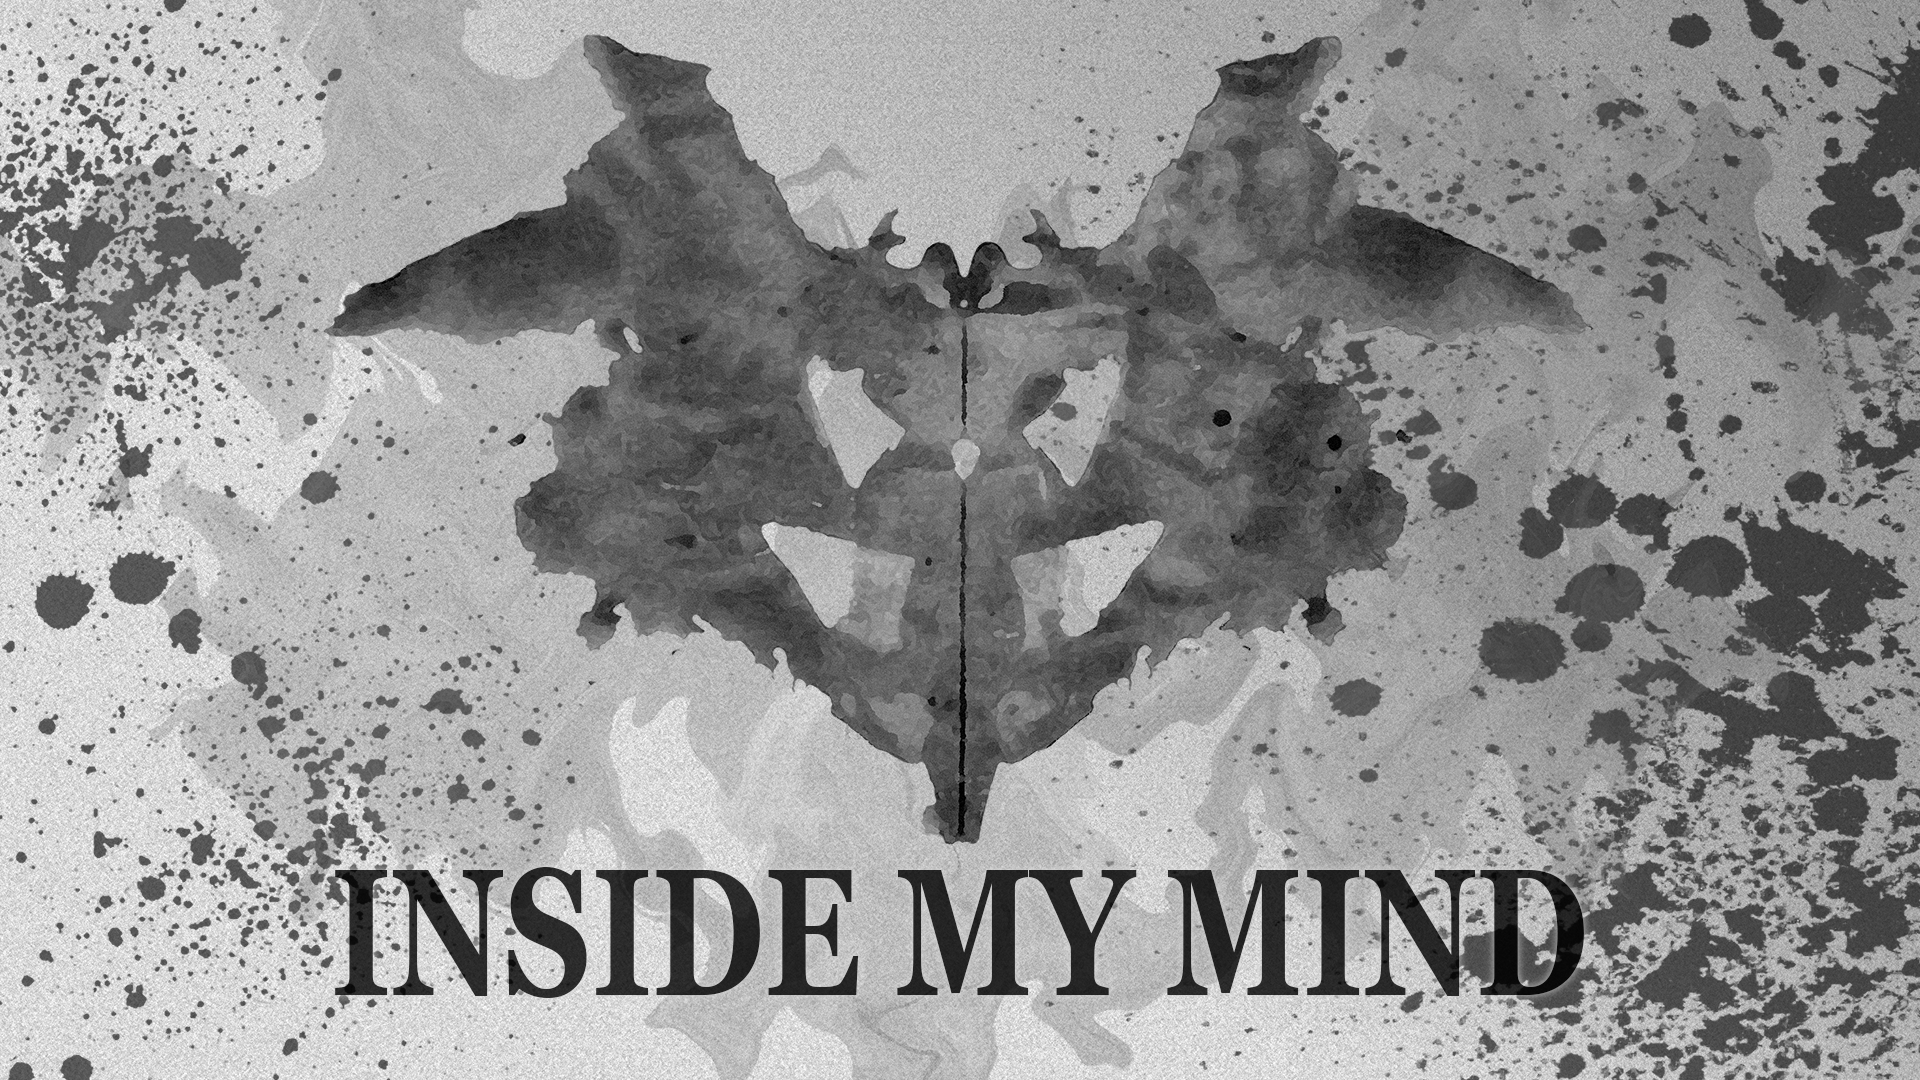 INSIDE MY MIND